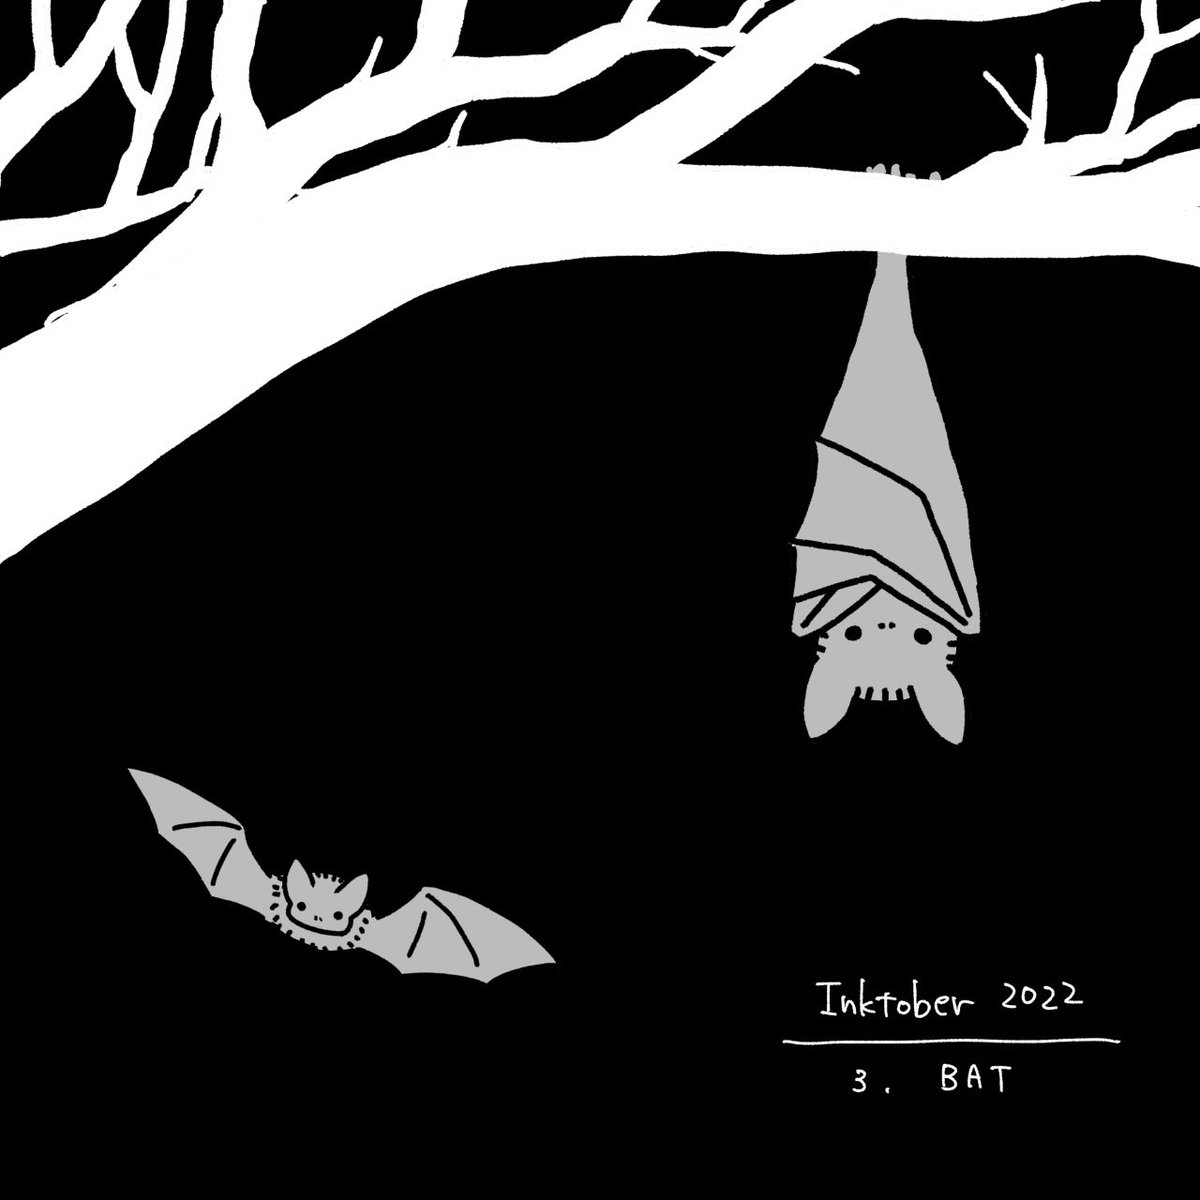 「インクトーバー!!10月6日!まだまだ巻き返せるぞ!#inktober2022 」|ミワカモのイラスト